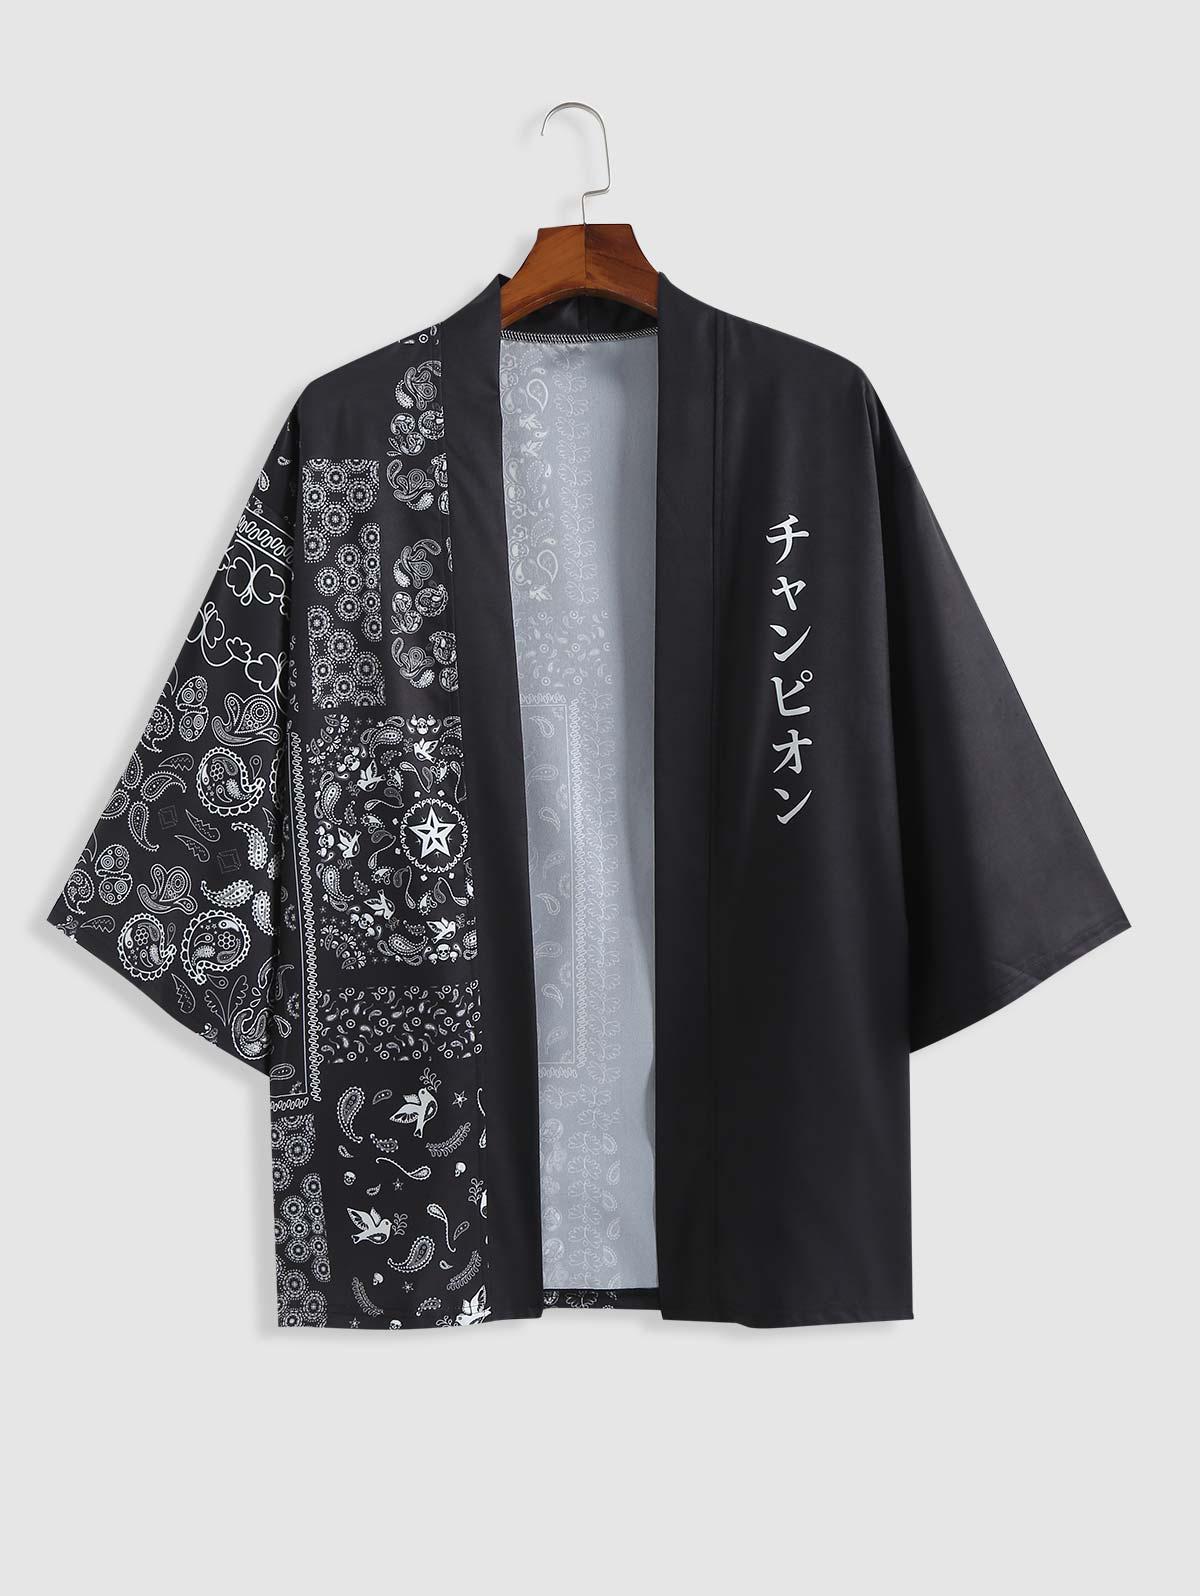 ZAFUL Men's Letter and Graphic Print Loose Kimono S Black